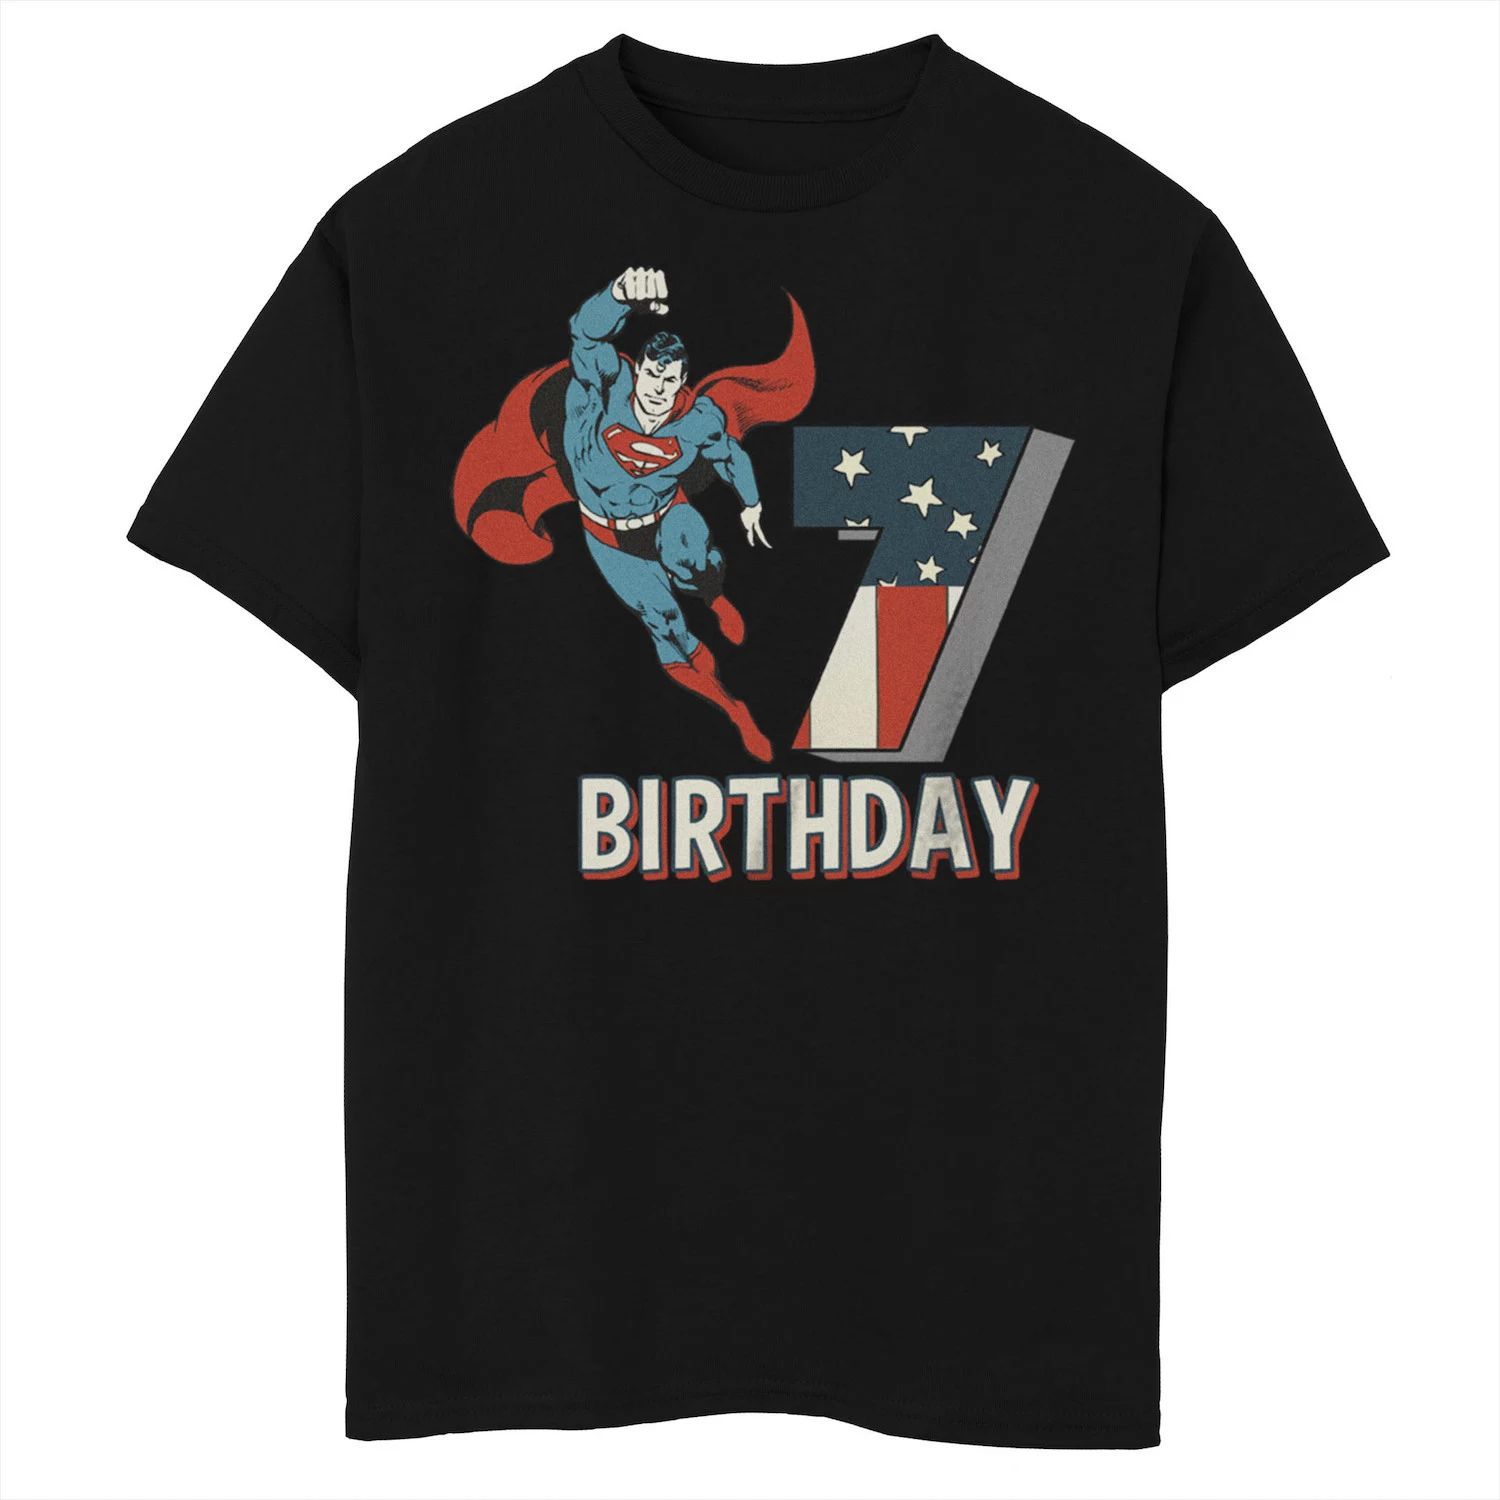 Футболка с рисунком Супермена на 7-й день рождения для мальчиков 8–20 лет из комиксов DC Comics Licensed Character футболка на 6 й день рождения чудо женщина для мальчиков 8–20 лет из комиксов dc comics licensed character